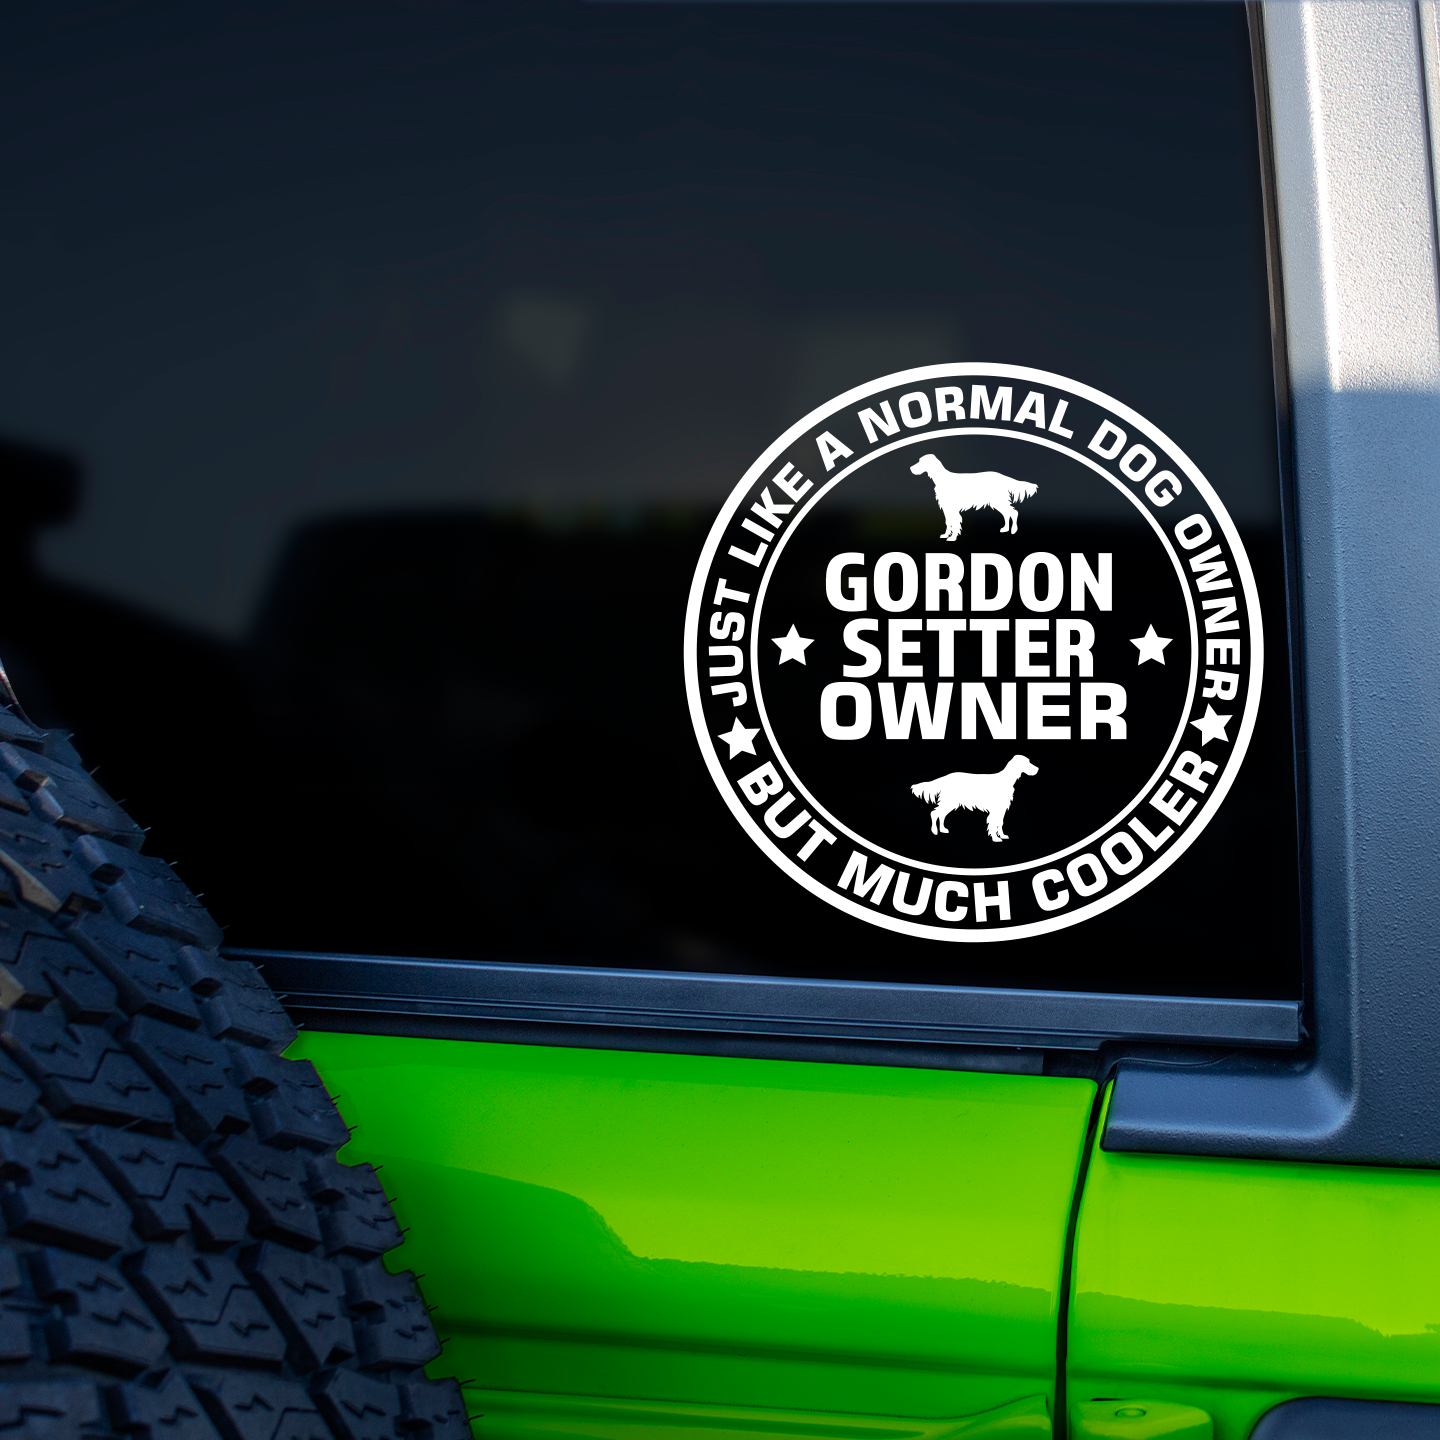 Gordon Setter Owner Sticker